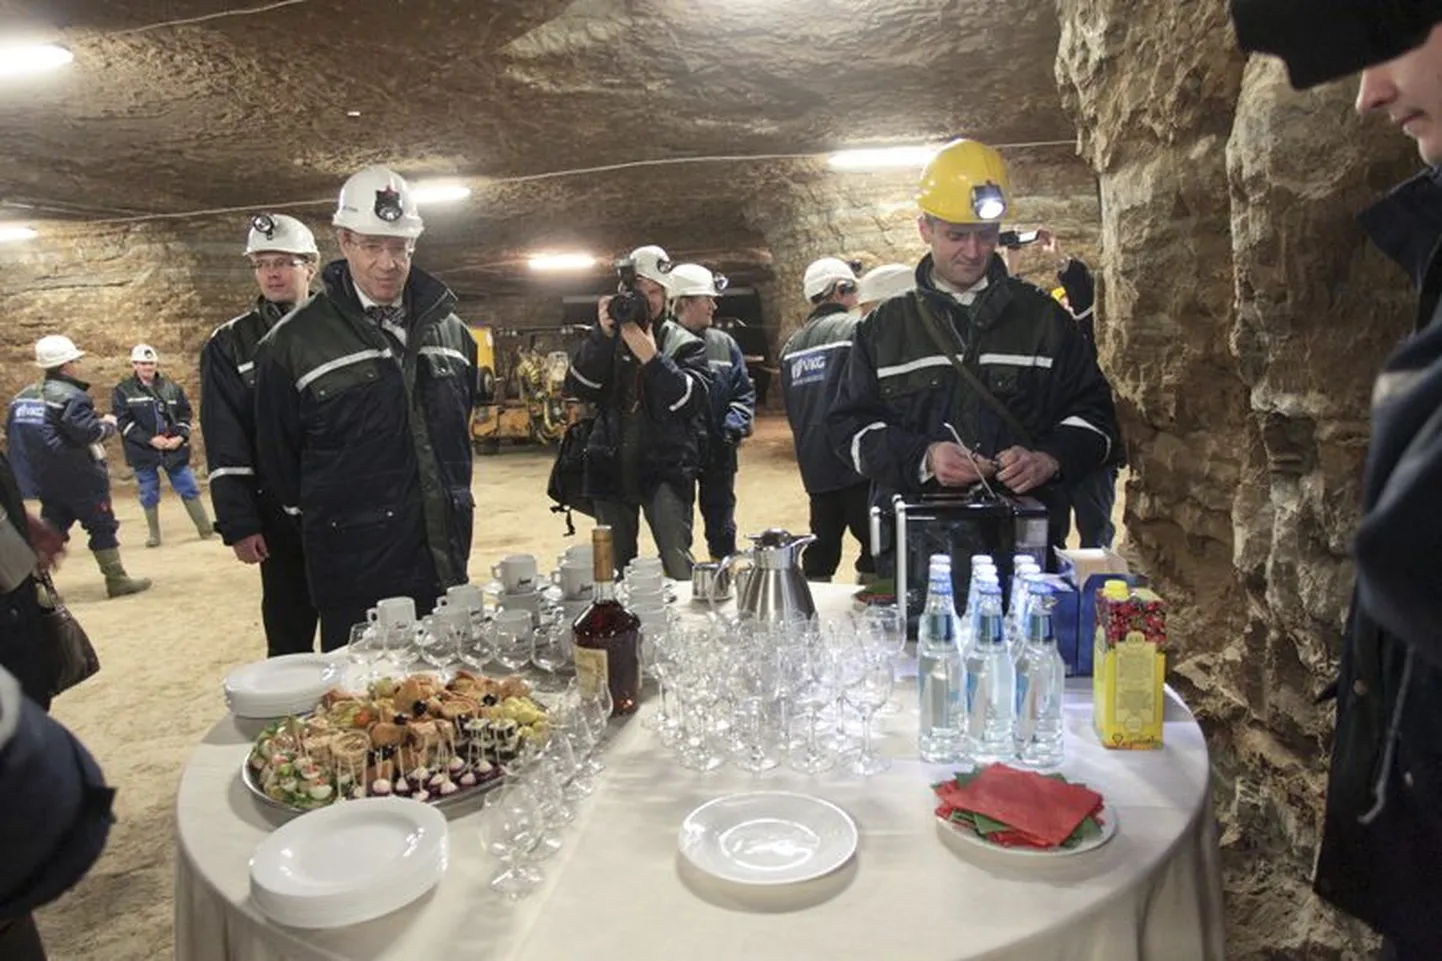 Ojamaa kaevanduse avamisel 2013. aasta jaanuaris käis pidu nii maa peal kui ka maa all.